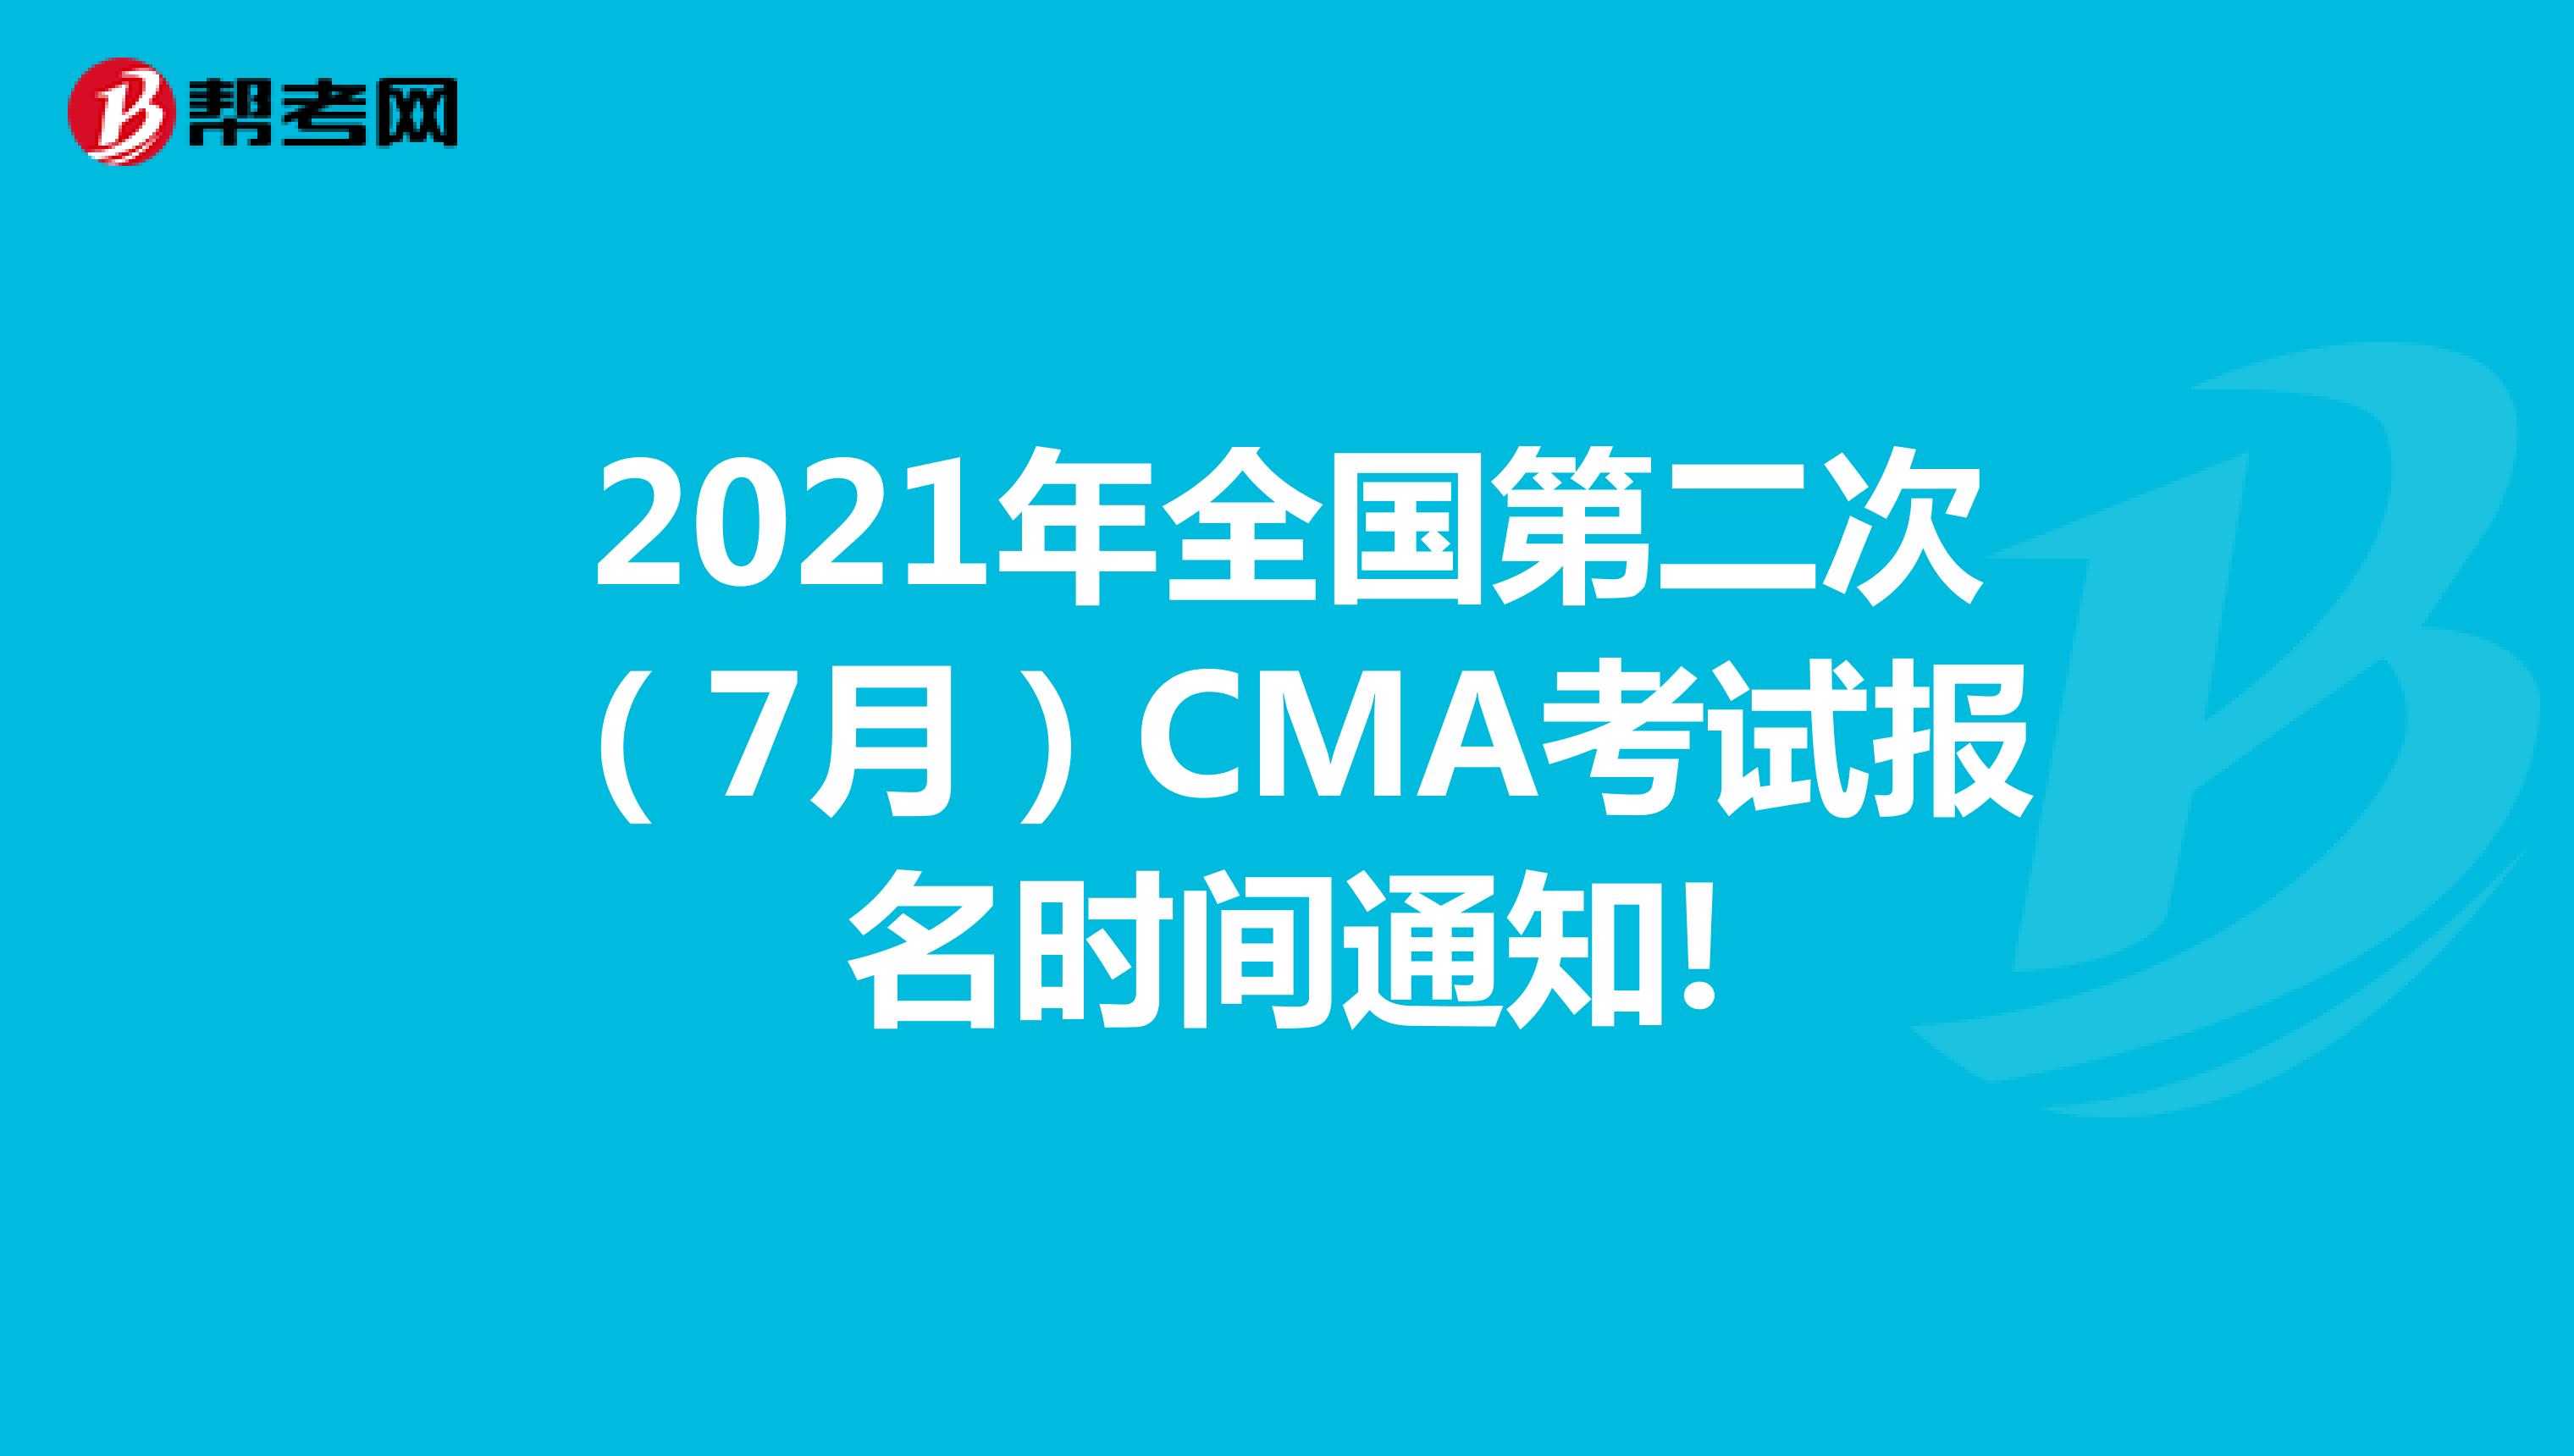 2021年全国第二次（7月）CMA考试报名时间通知!